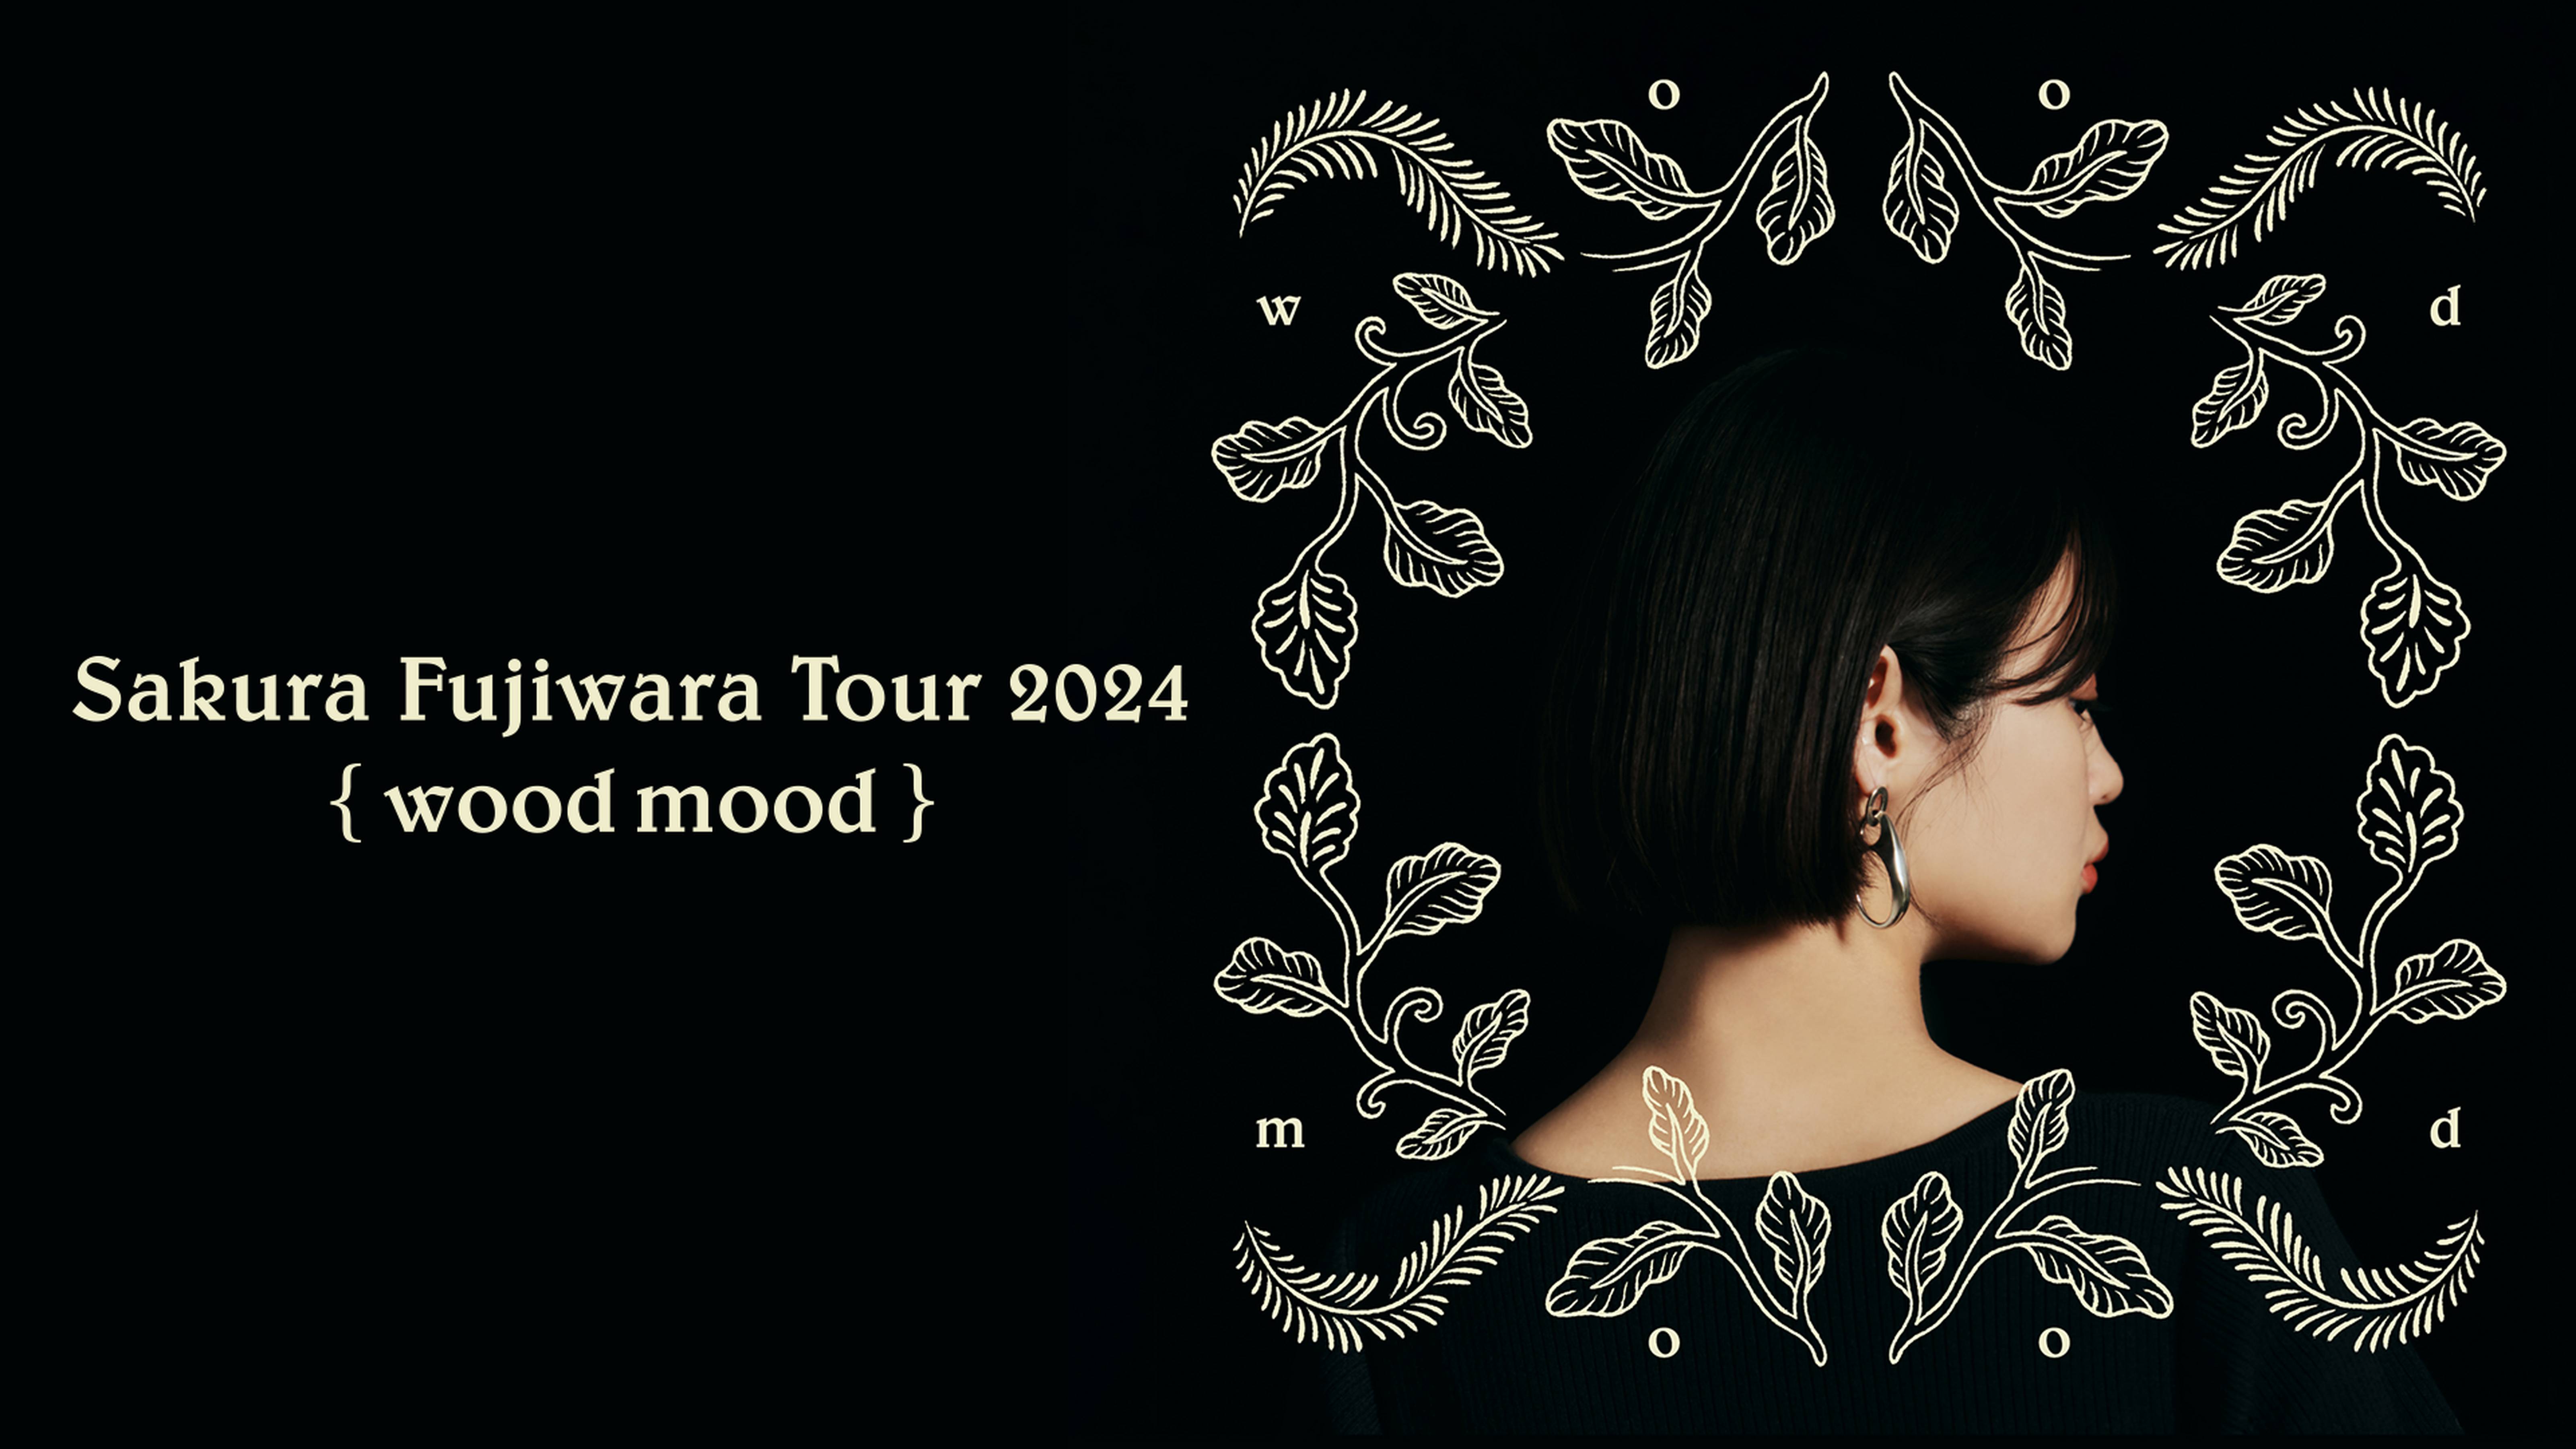 Sakura Fujiwara Tour 2024 wood mood